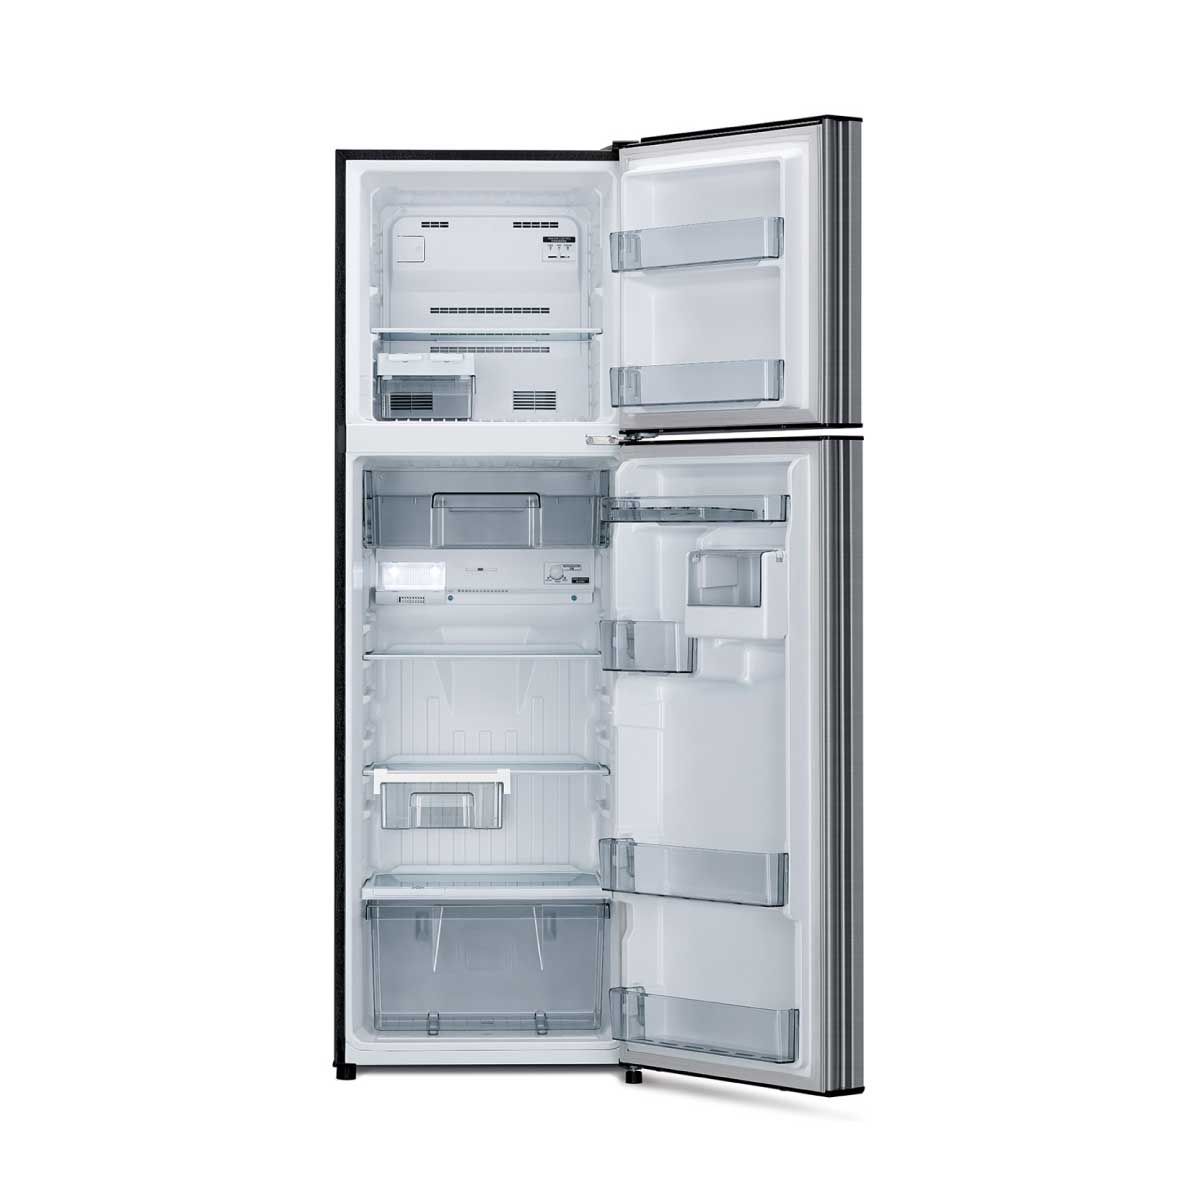 MITSUBISHI ELECTRIC  ตู้เย็น2ประตู 10.2 คิว สีเงิน รุ่นMR-FC31ET